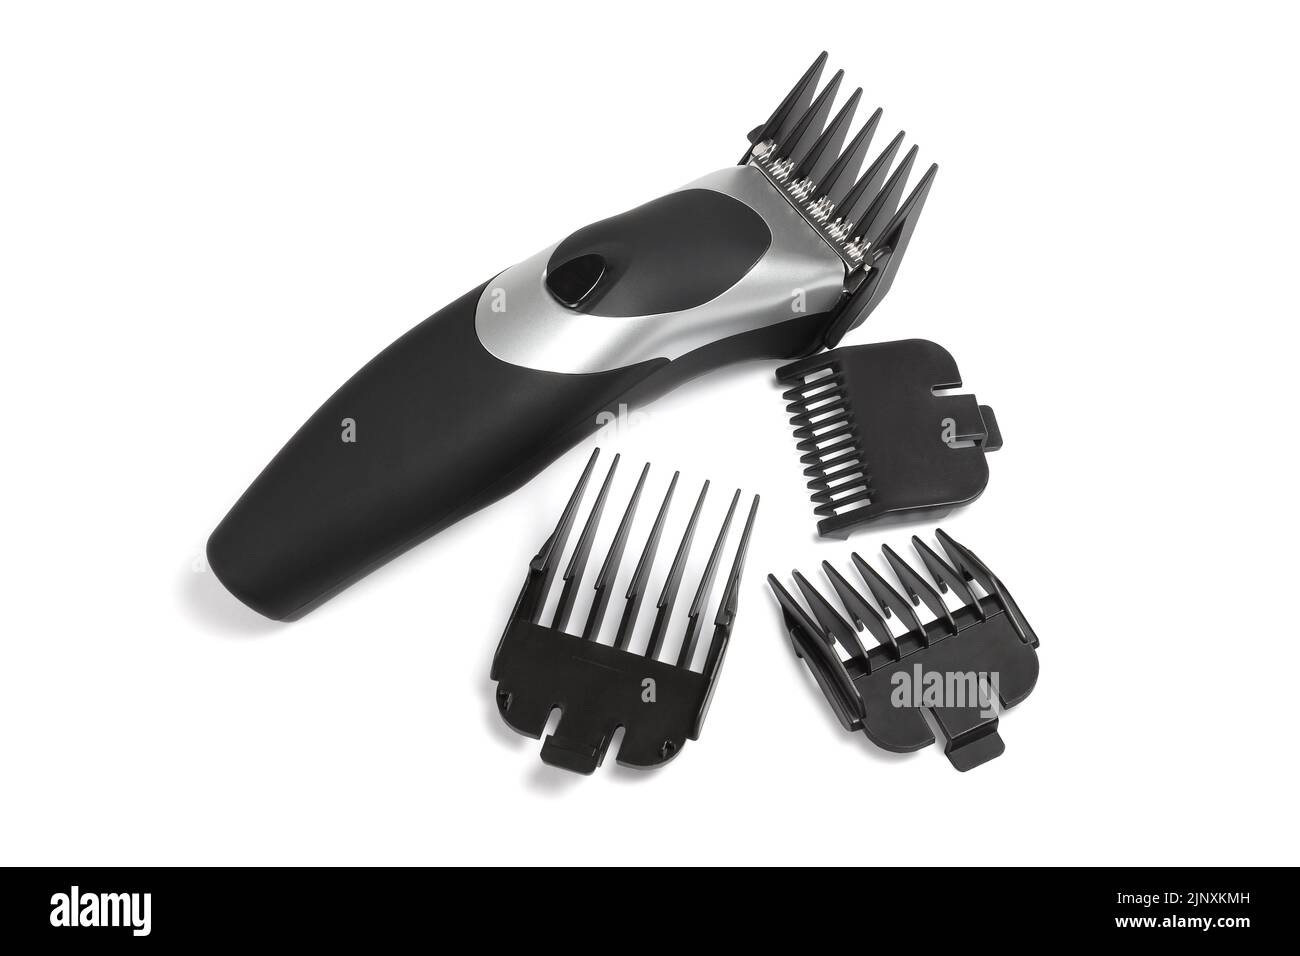 Elektrischer Haarschneider und verschiedene Kunststoffkämme auf weißem Hintergrund Stockfoto